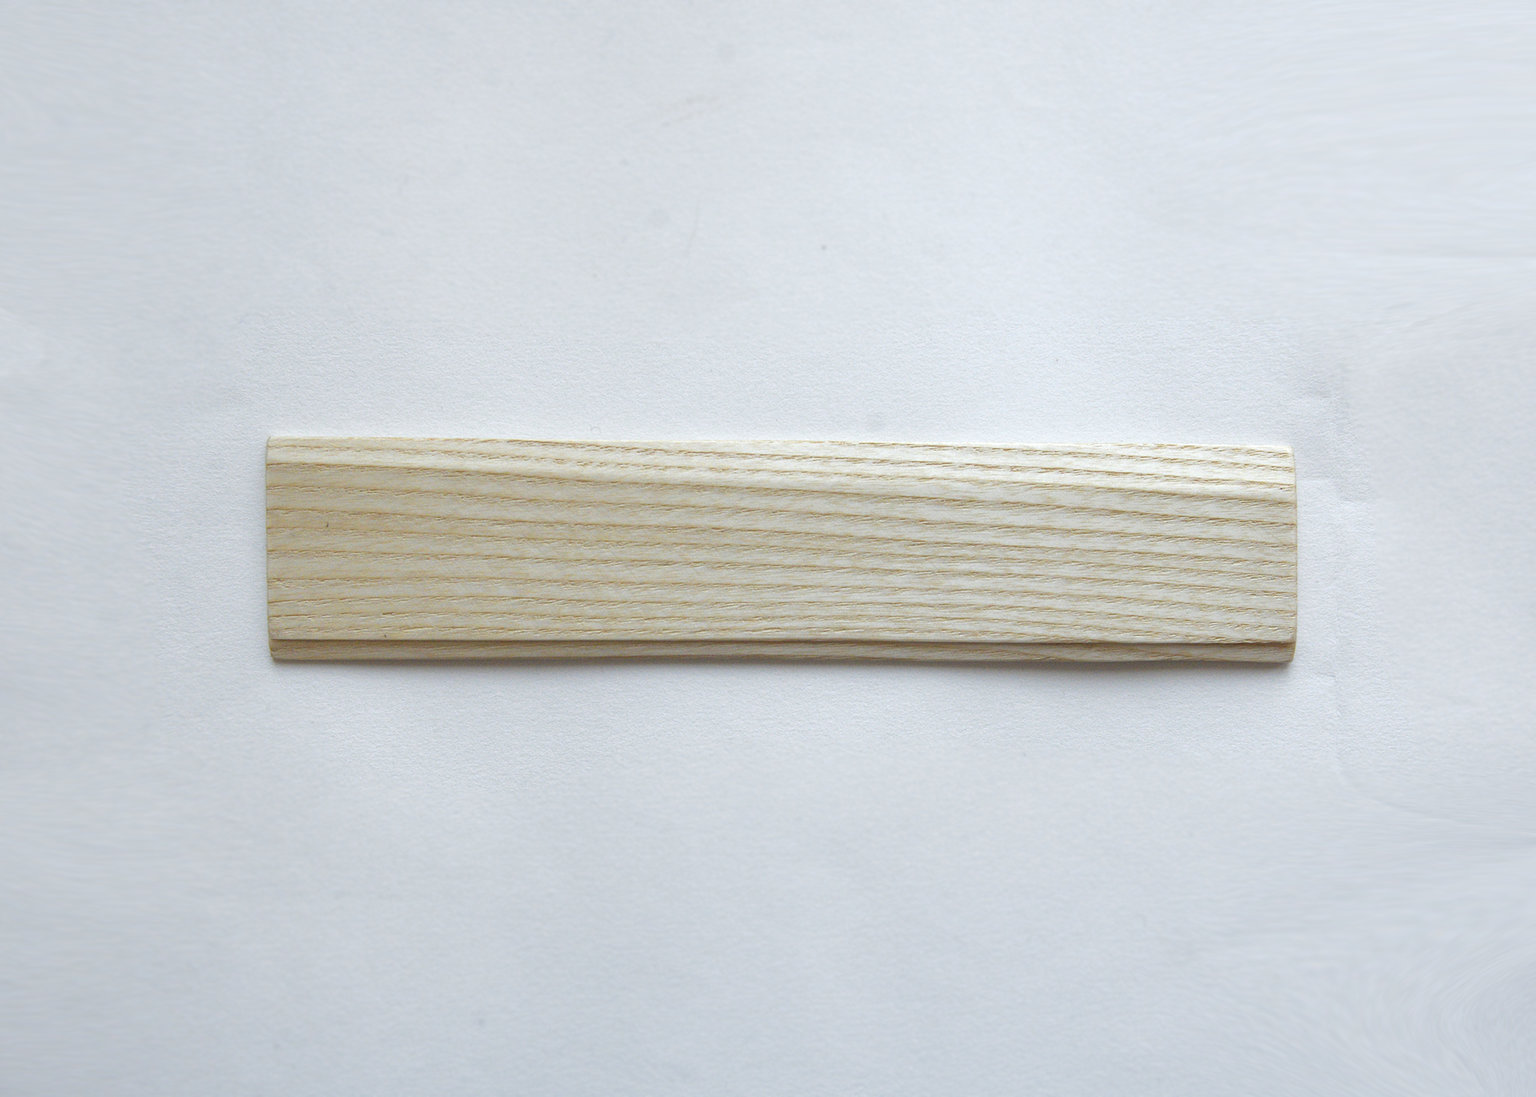 Handmade wooden ruler